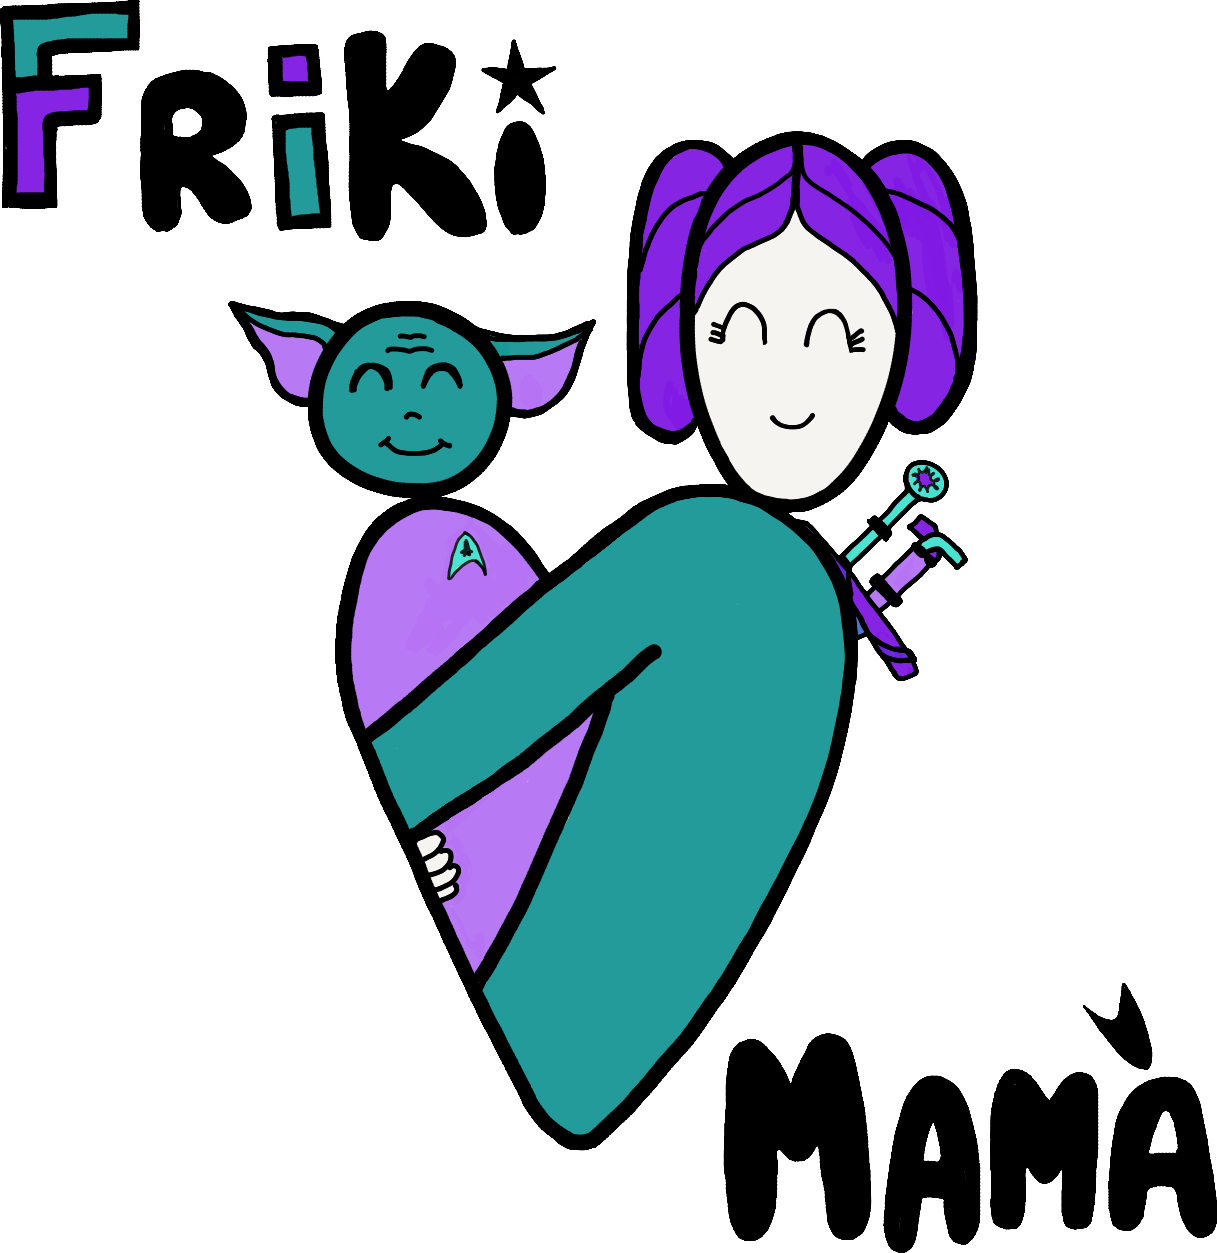 Logo de la tienda Friki MamáMama friki con peinado de leia organa star wars y espadas The Witcher y bebé baby yoda con broche de Star Trek